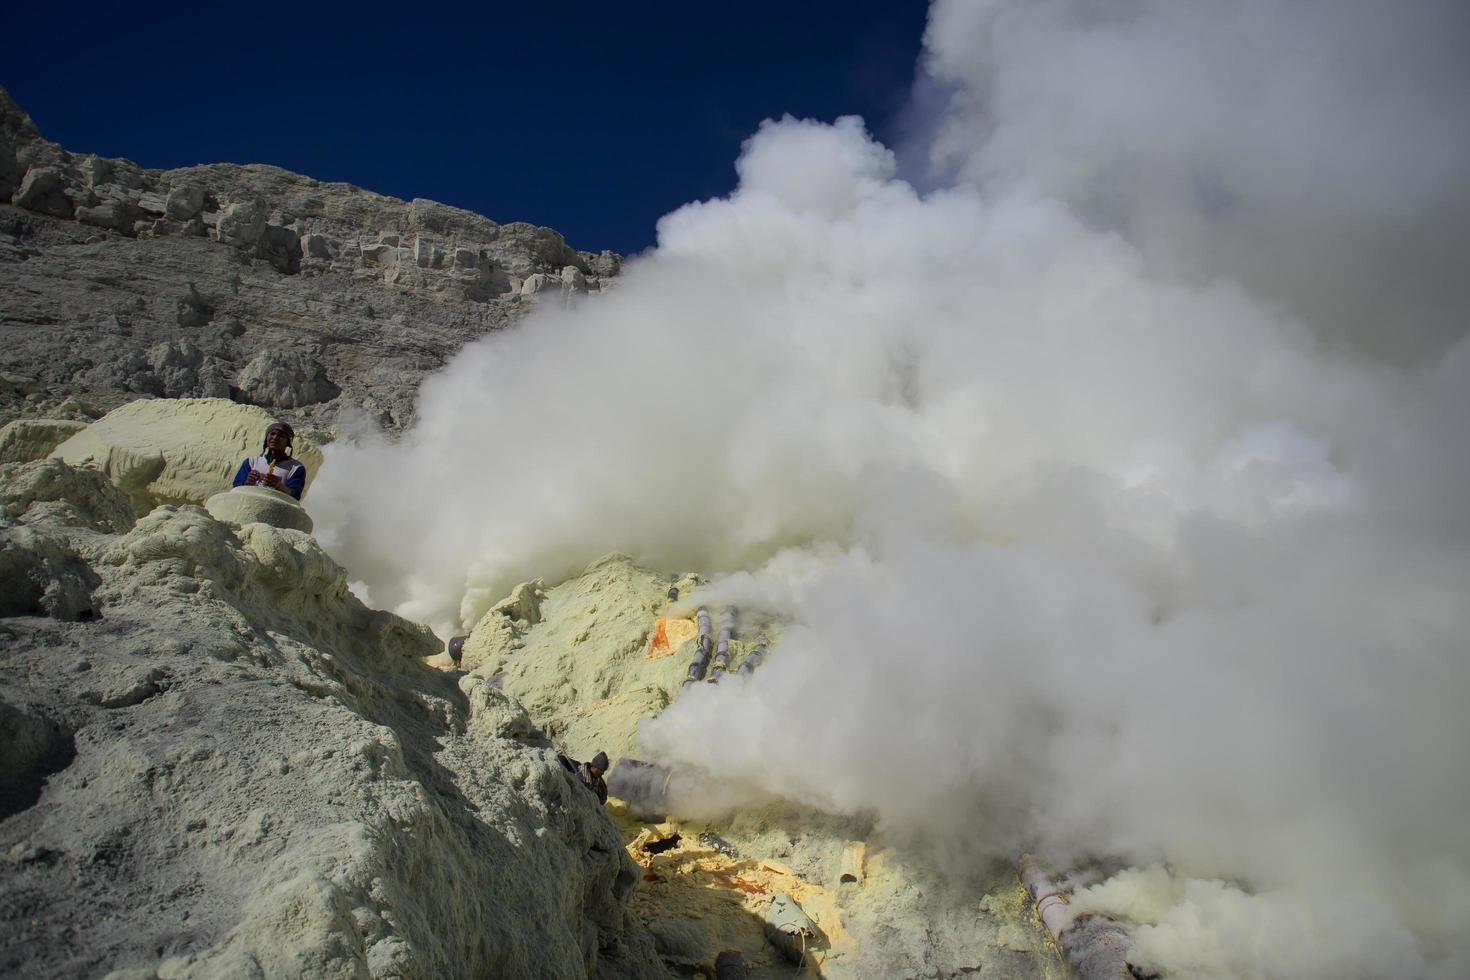 zwavelmijn in de krater van de ijen-vulkaan, oost-java, indonesië foto